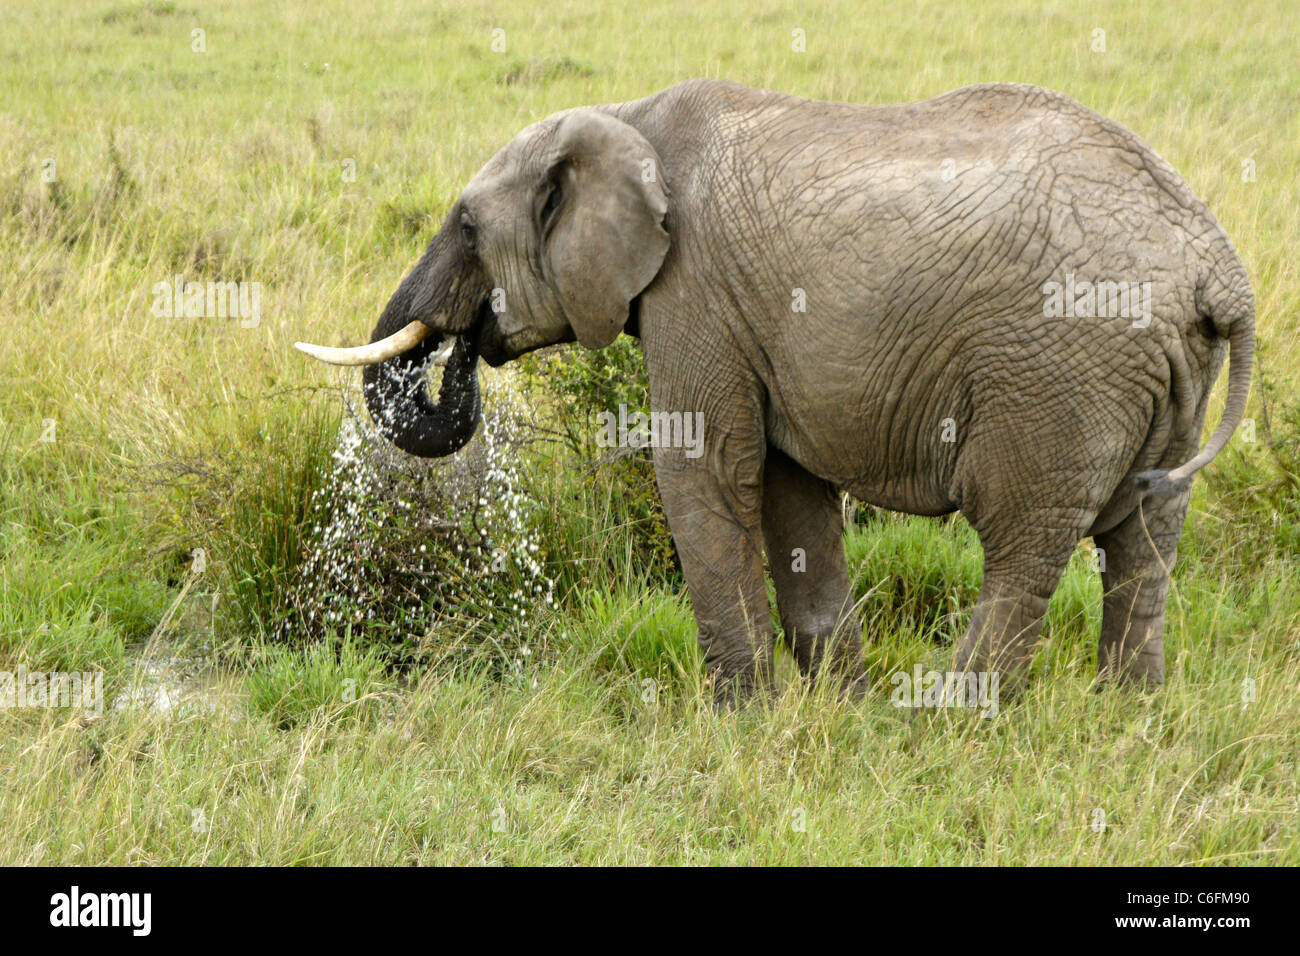 Elephant drinking from small waterhole, Masai Mara, Kenya Stock Photo